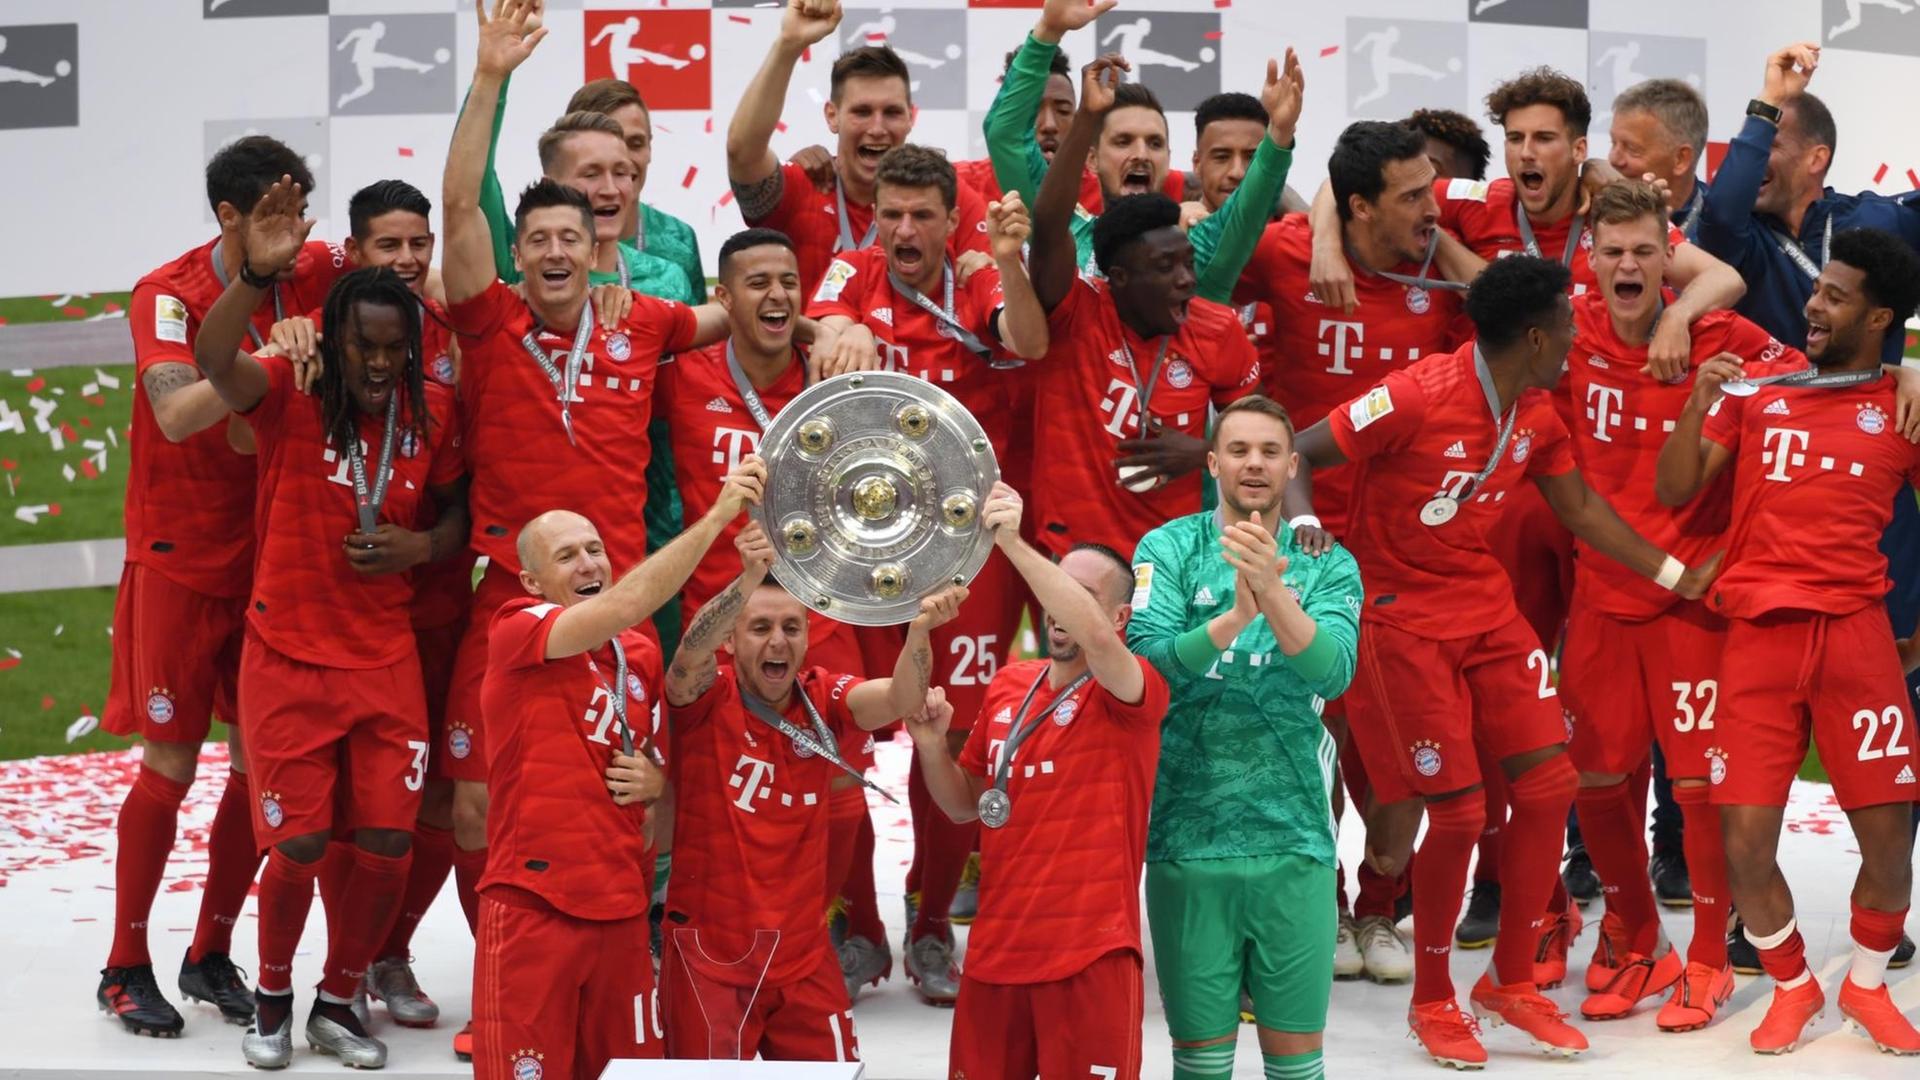 Spieler von München jubeln mit der Meisterschale bei der Siegerehrung für die Meisterschaft.